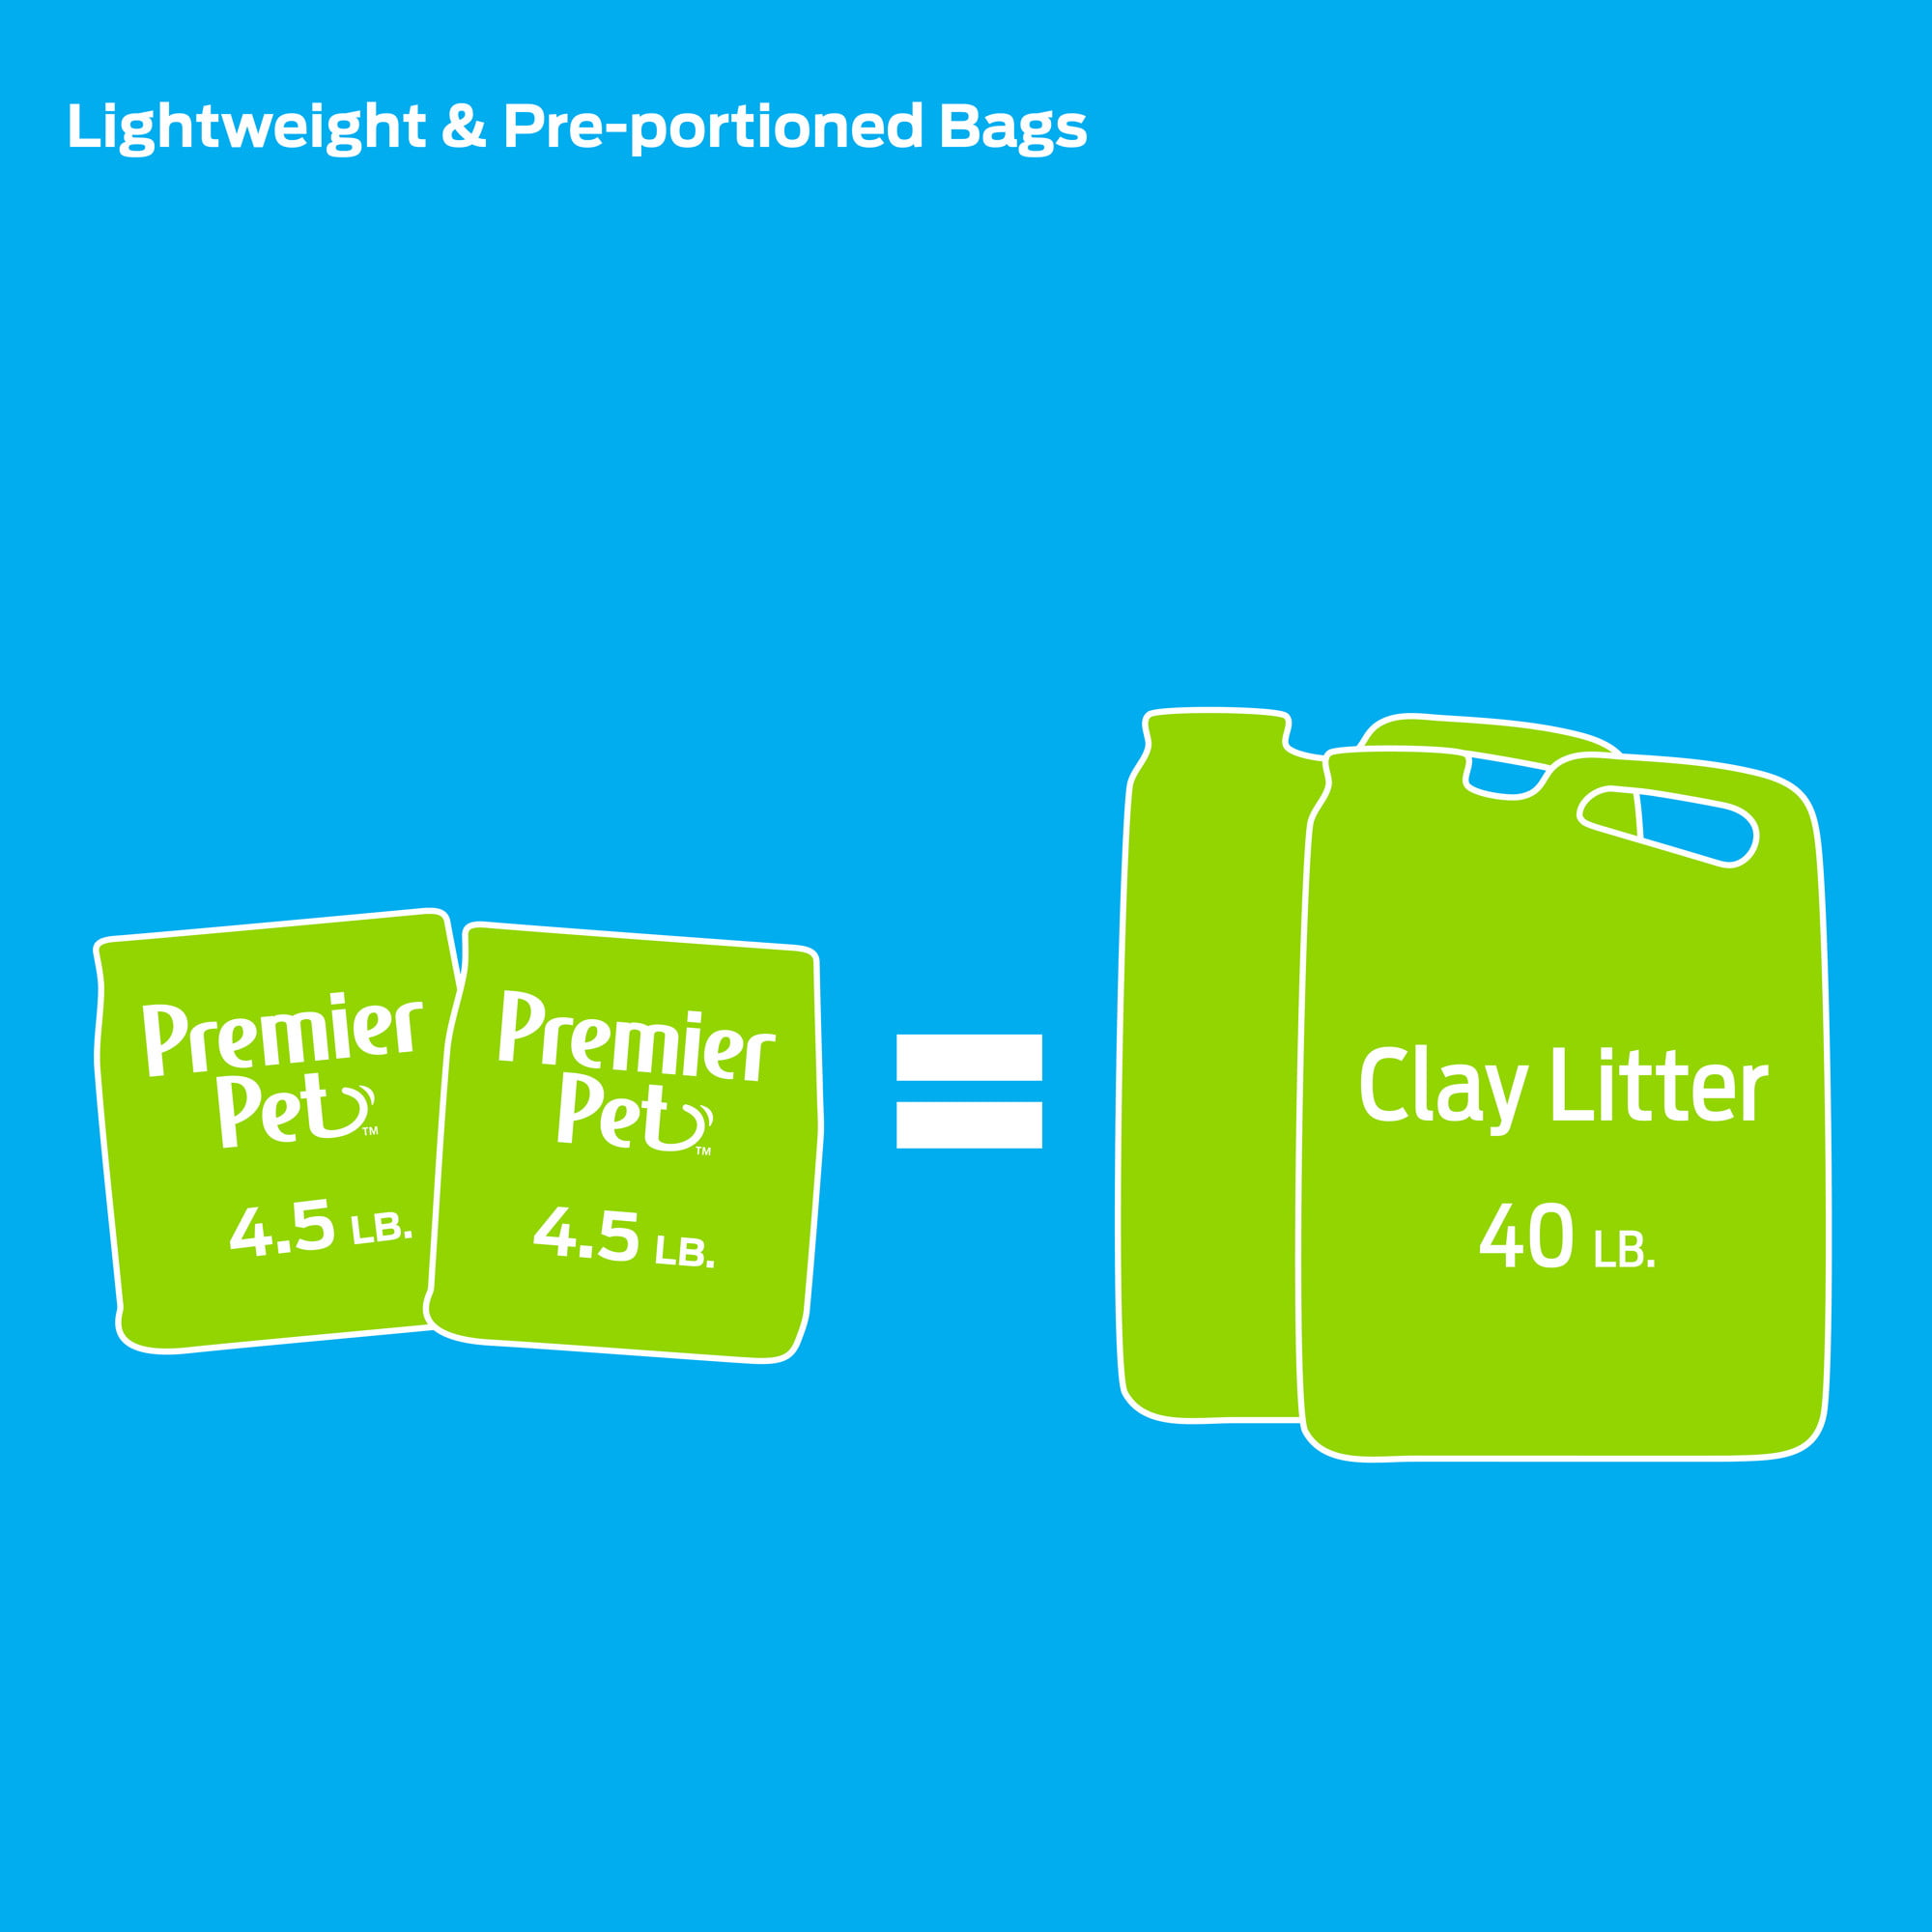 Premier Pet Crystal Litter - 2 Pack